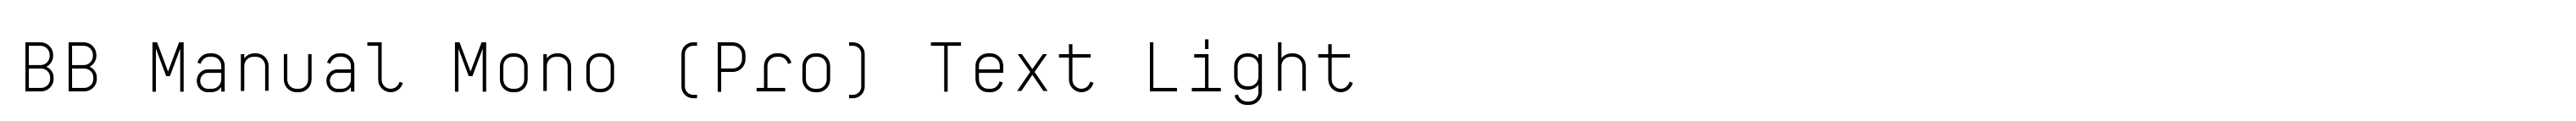 BB Manual Mono (Pro) Text Light